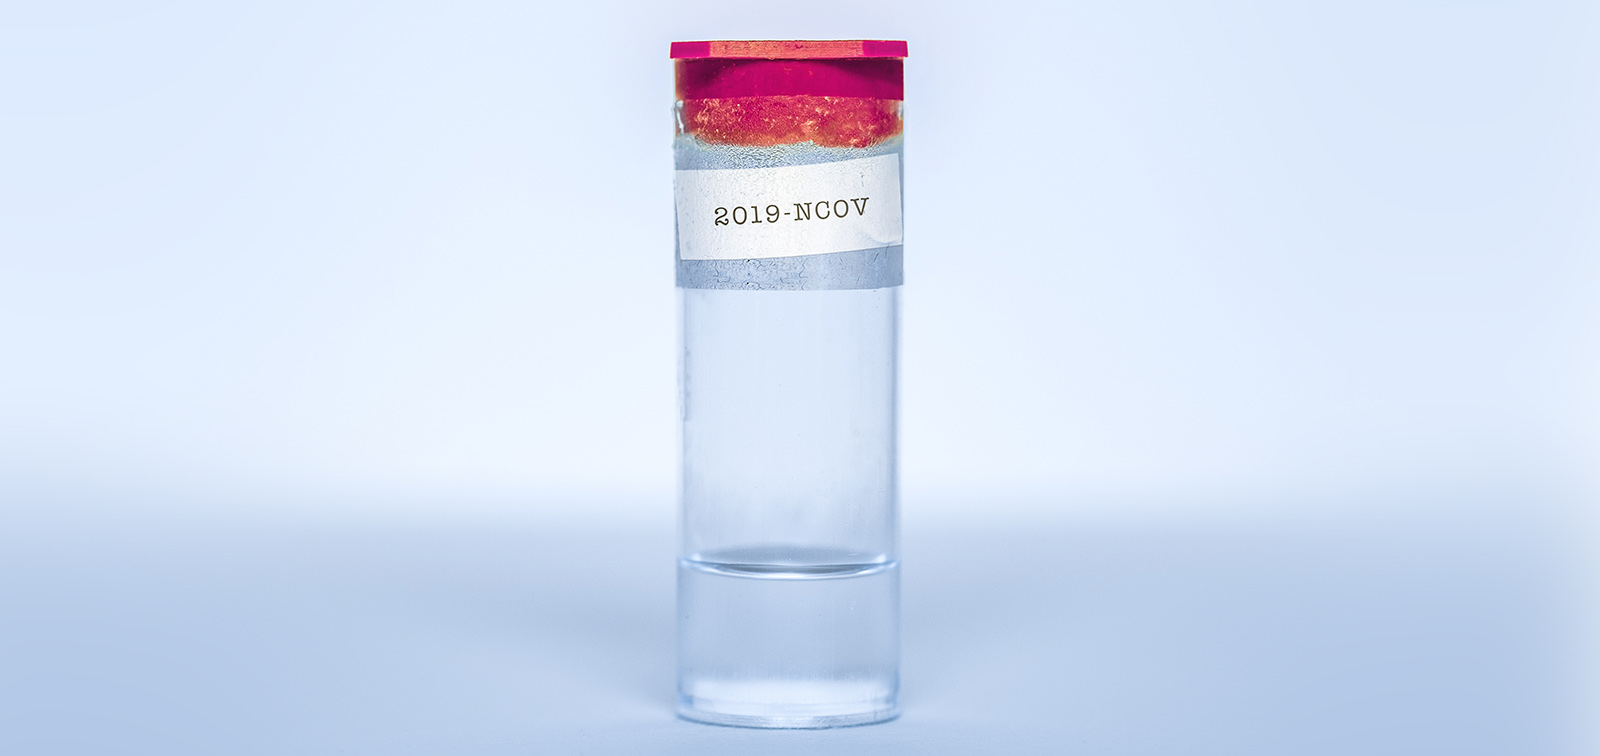 Flascó de vidre amb l'etiqueta 2019-NCOV